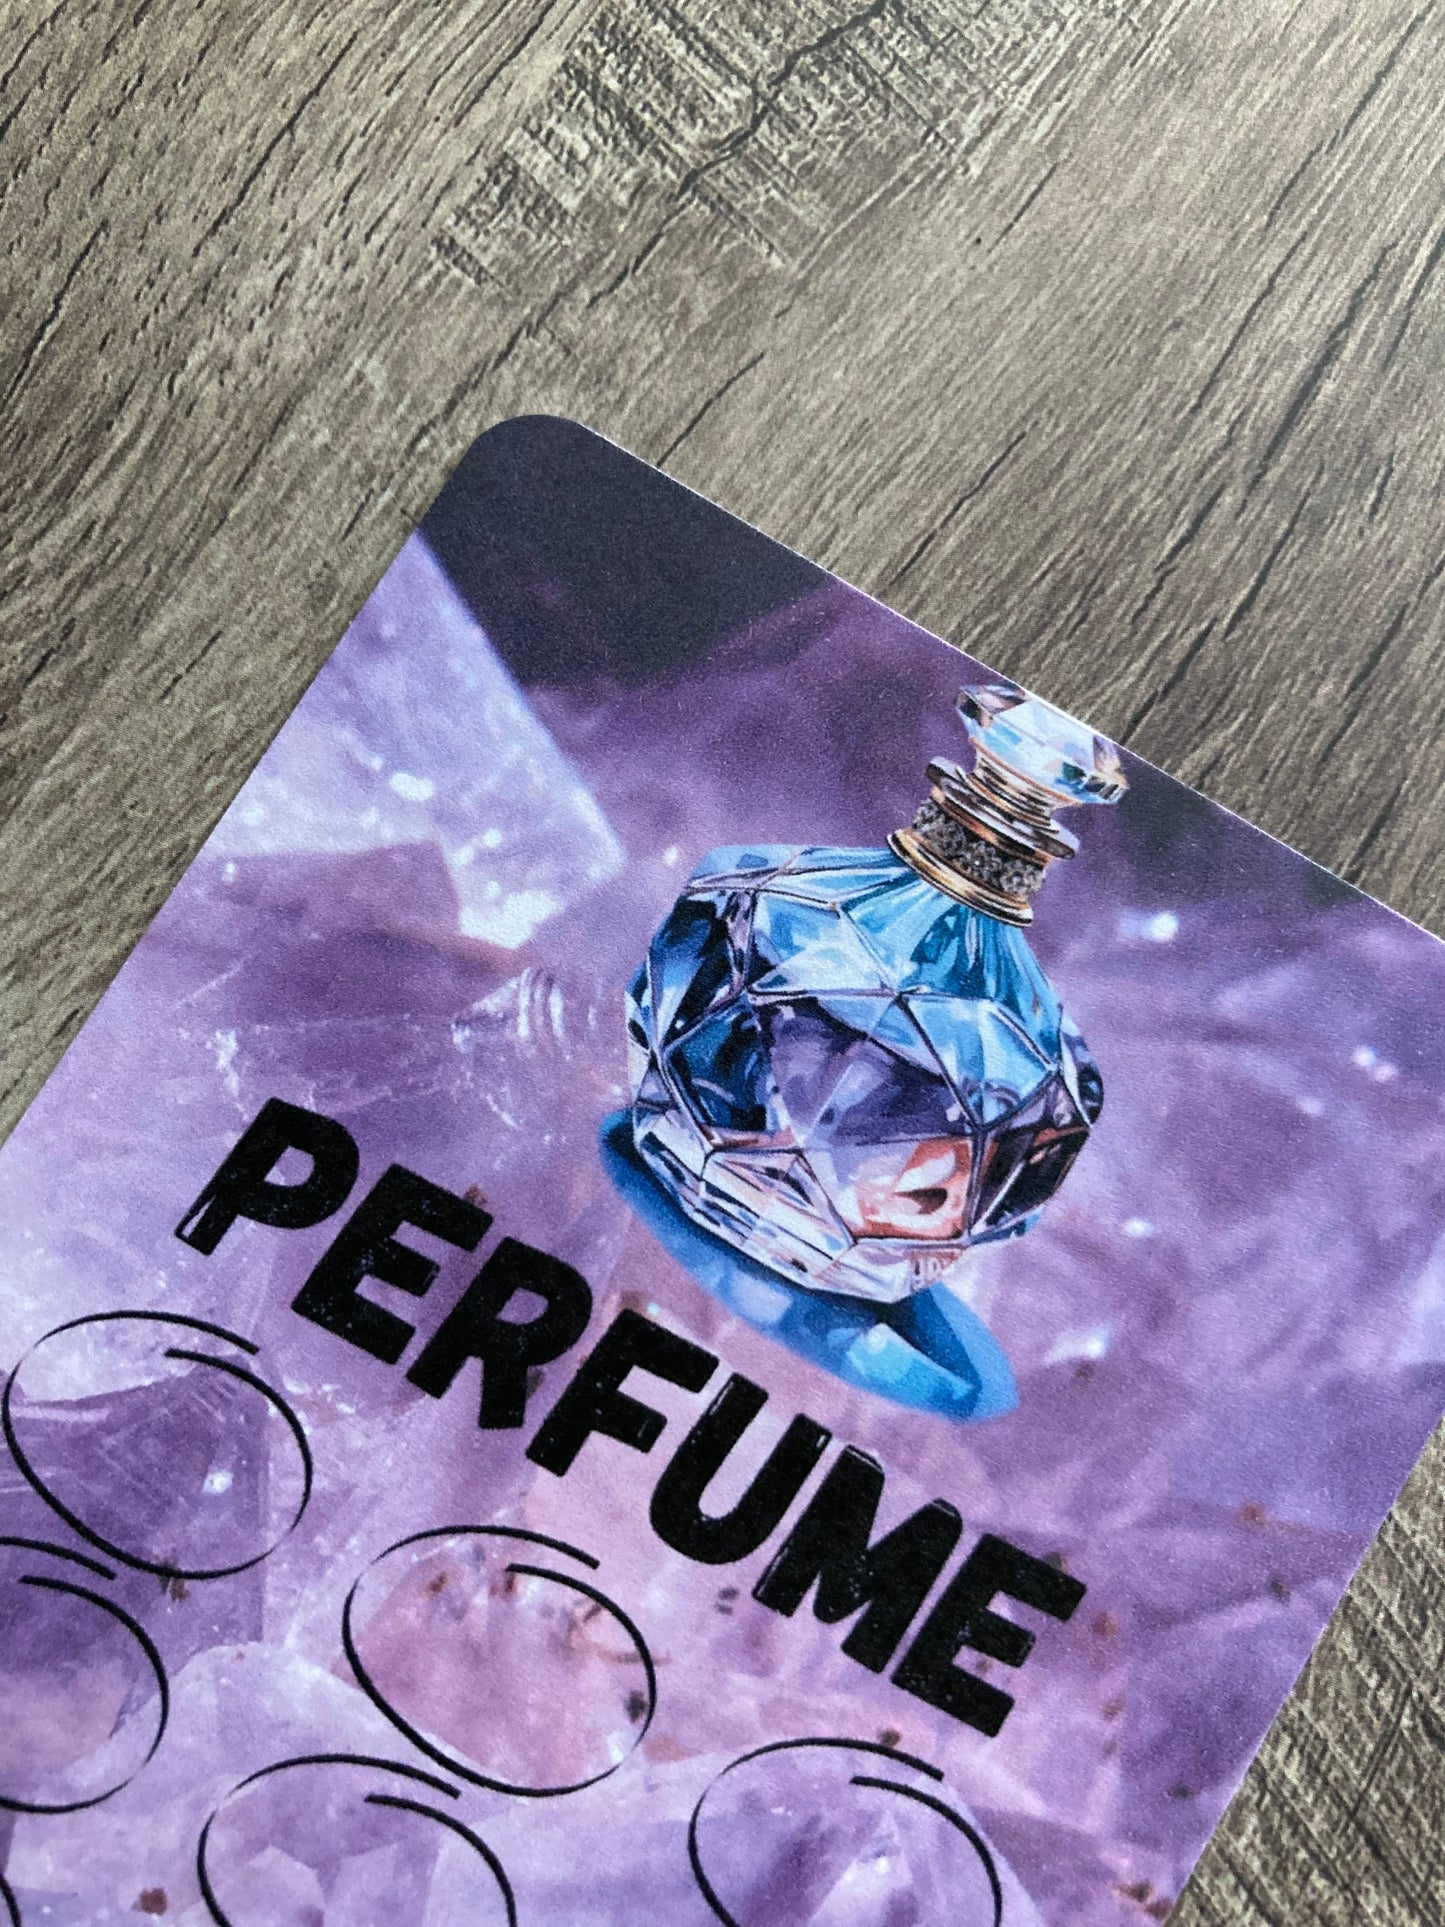 Saving challenge “perfume”